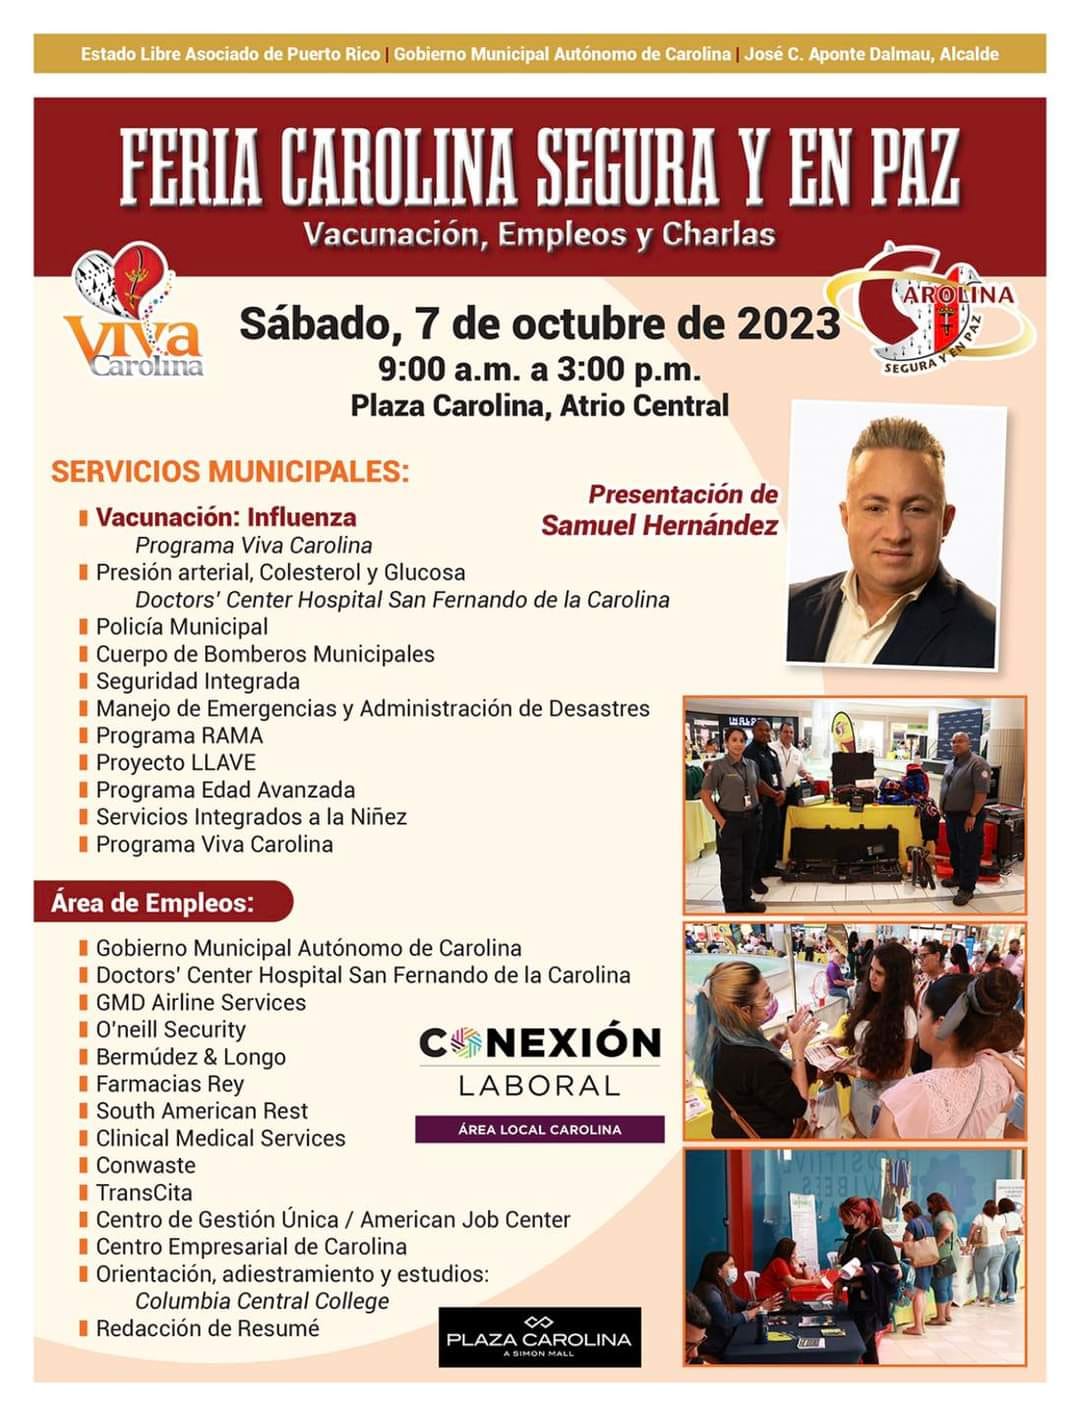 Feria Carolina Segura y en Paz el sabado 7 de octubre del 2023 en Plaza Carolina, Atrio central.